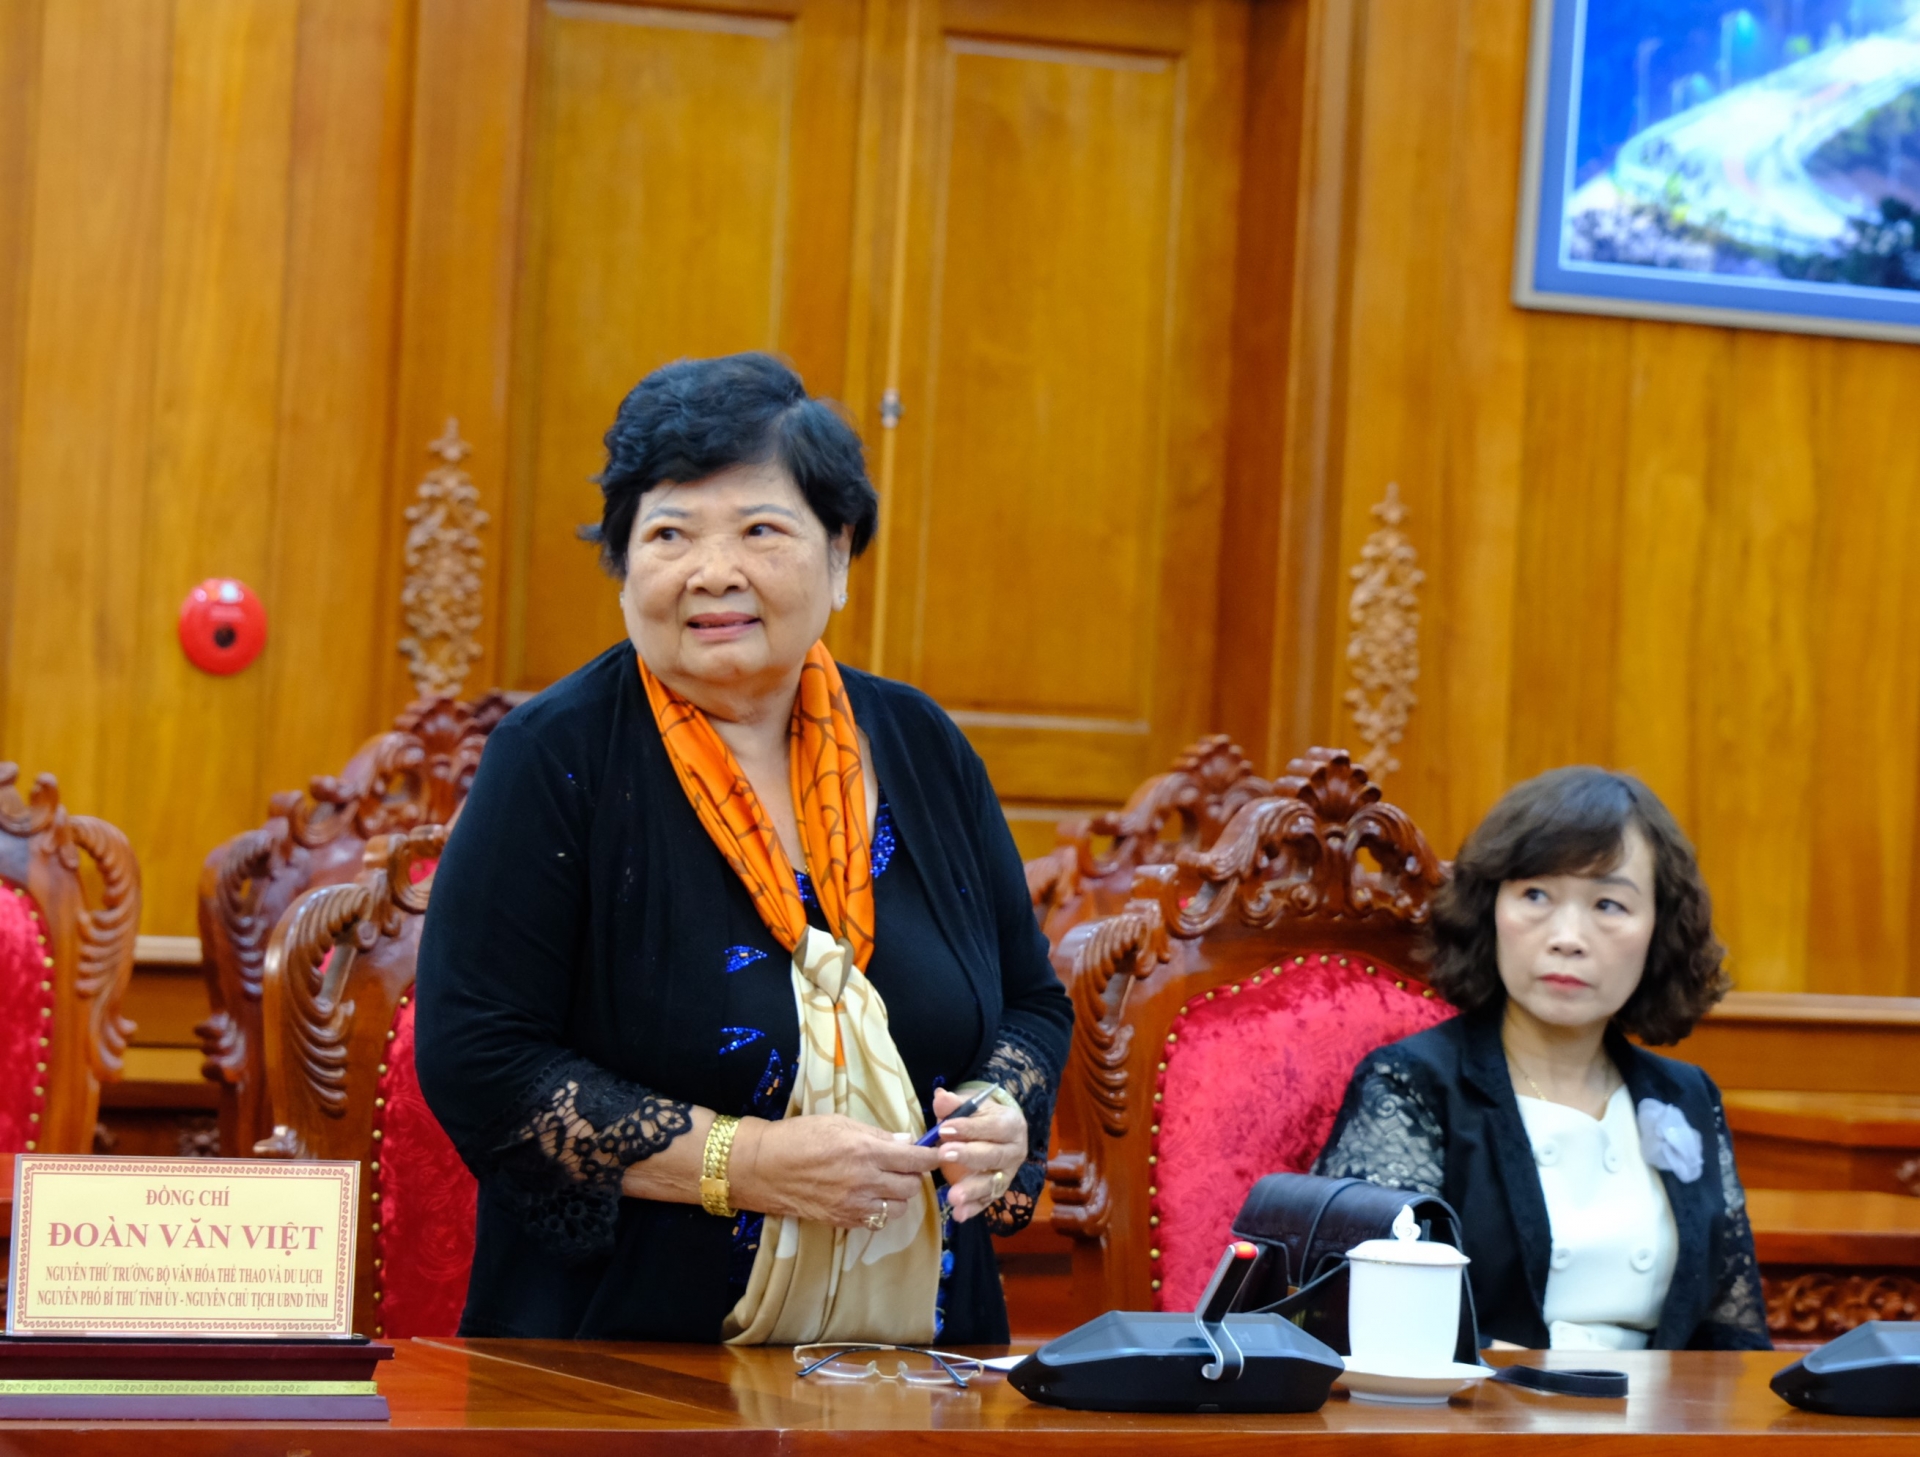 Đồng chí Lưu Thị Thanh An - Nguyên Bí thư Thành ủy Bảo Lộc phát biểu tại buổi gặp mặt